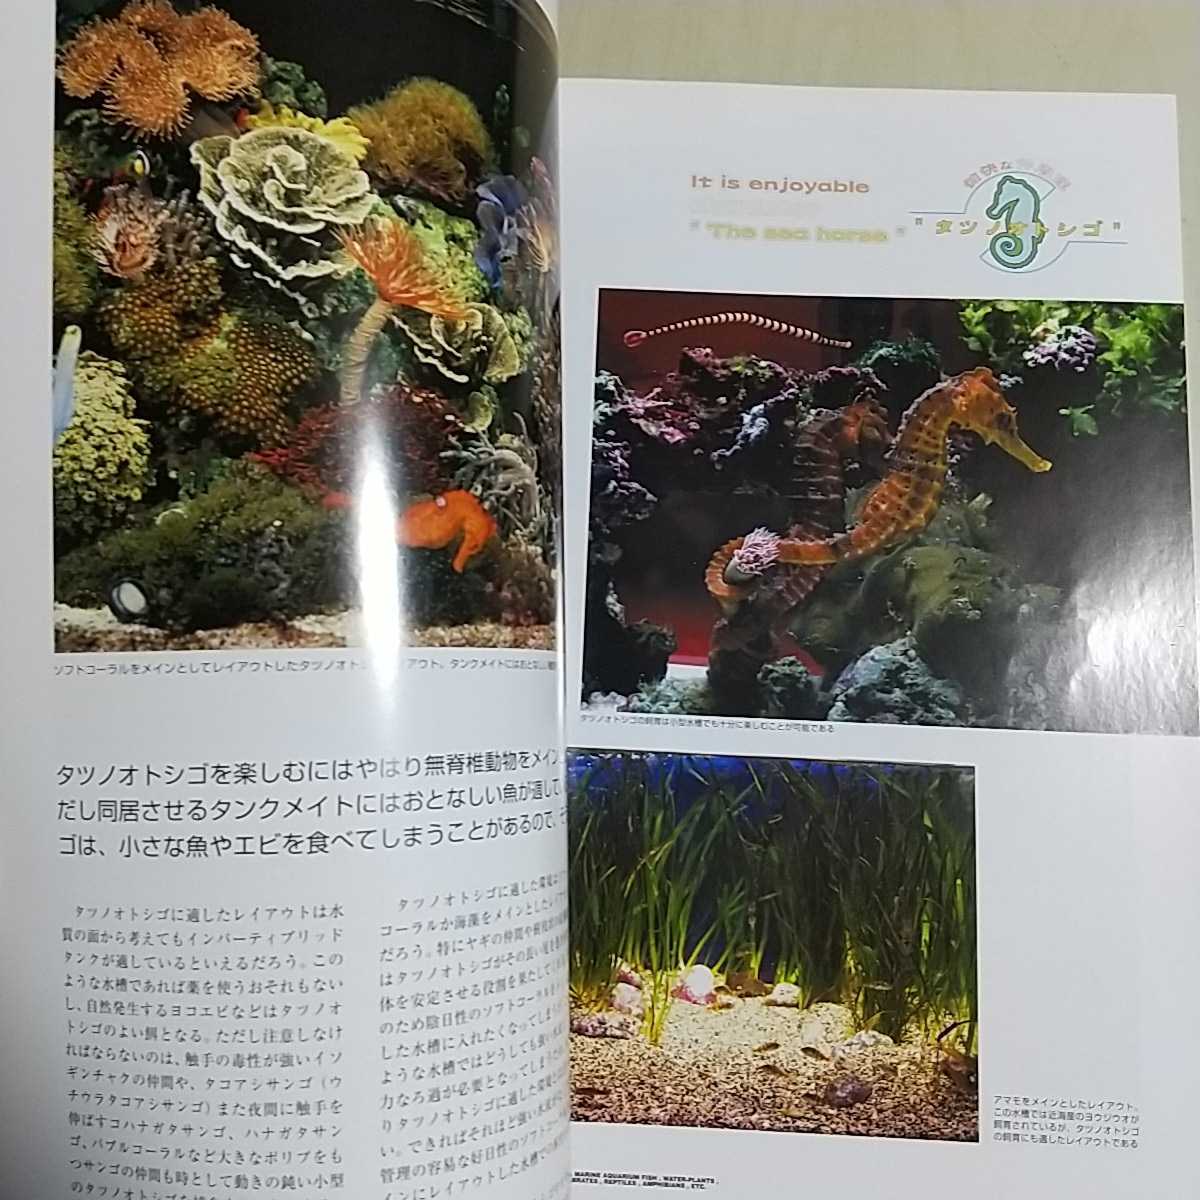 マリンアクアリウムダイジャスト Vol.2 ピーシーズ マリンレイアウトを楽しむ タツノオトシゴの愉快な世界 サンゴ 魚